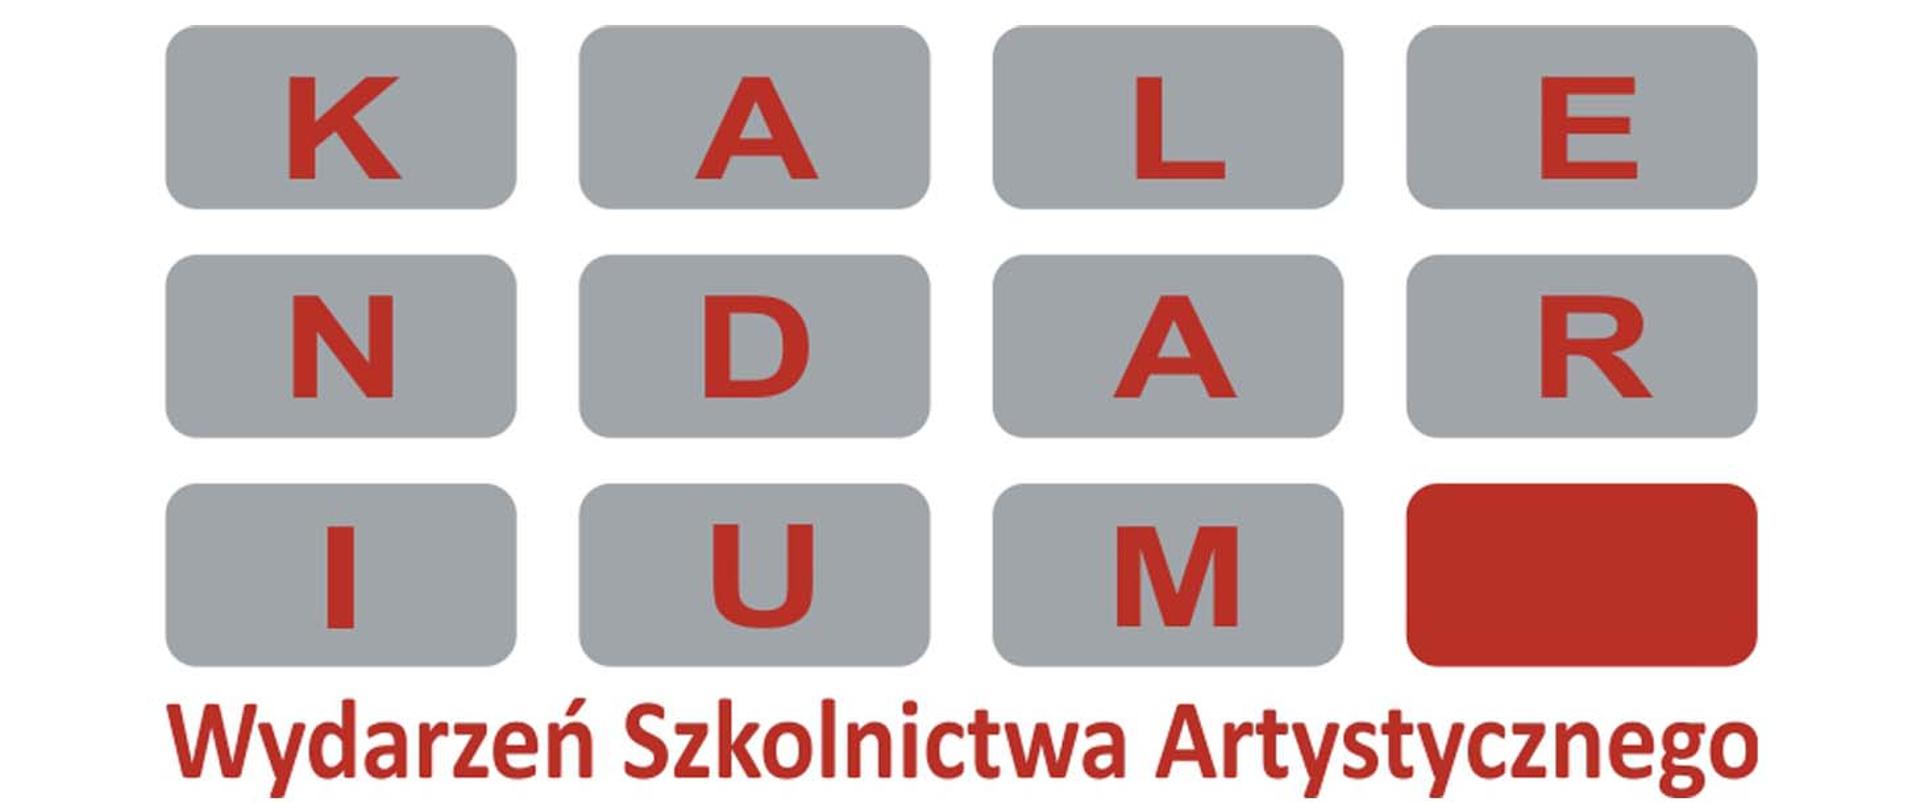 Logotyp kalendarium wydarzeń szkolnictwa artystycznego